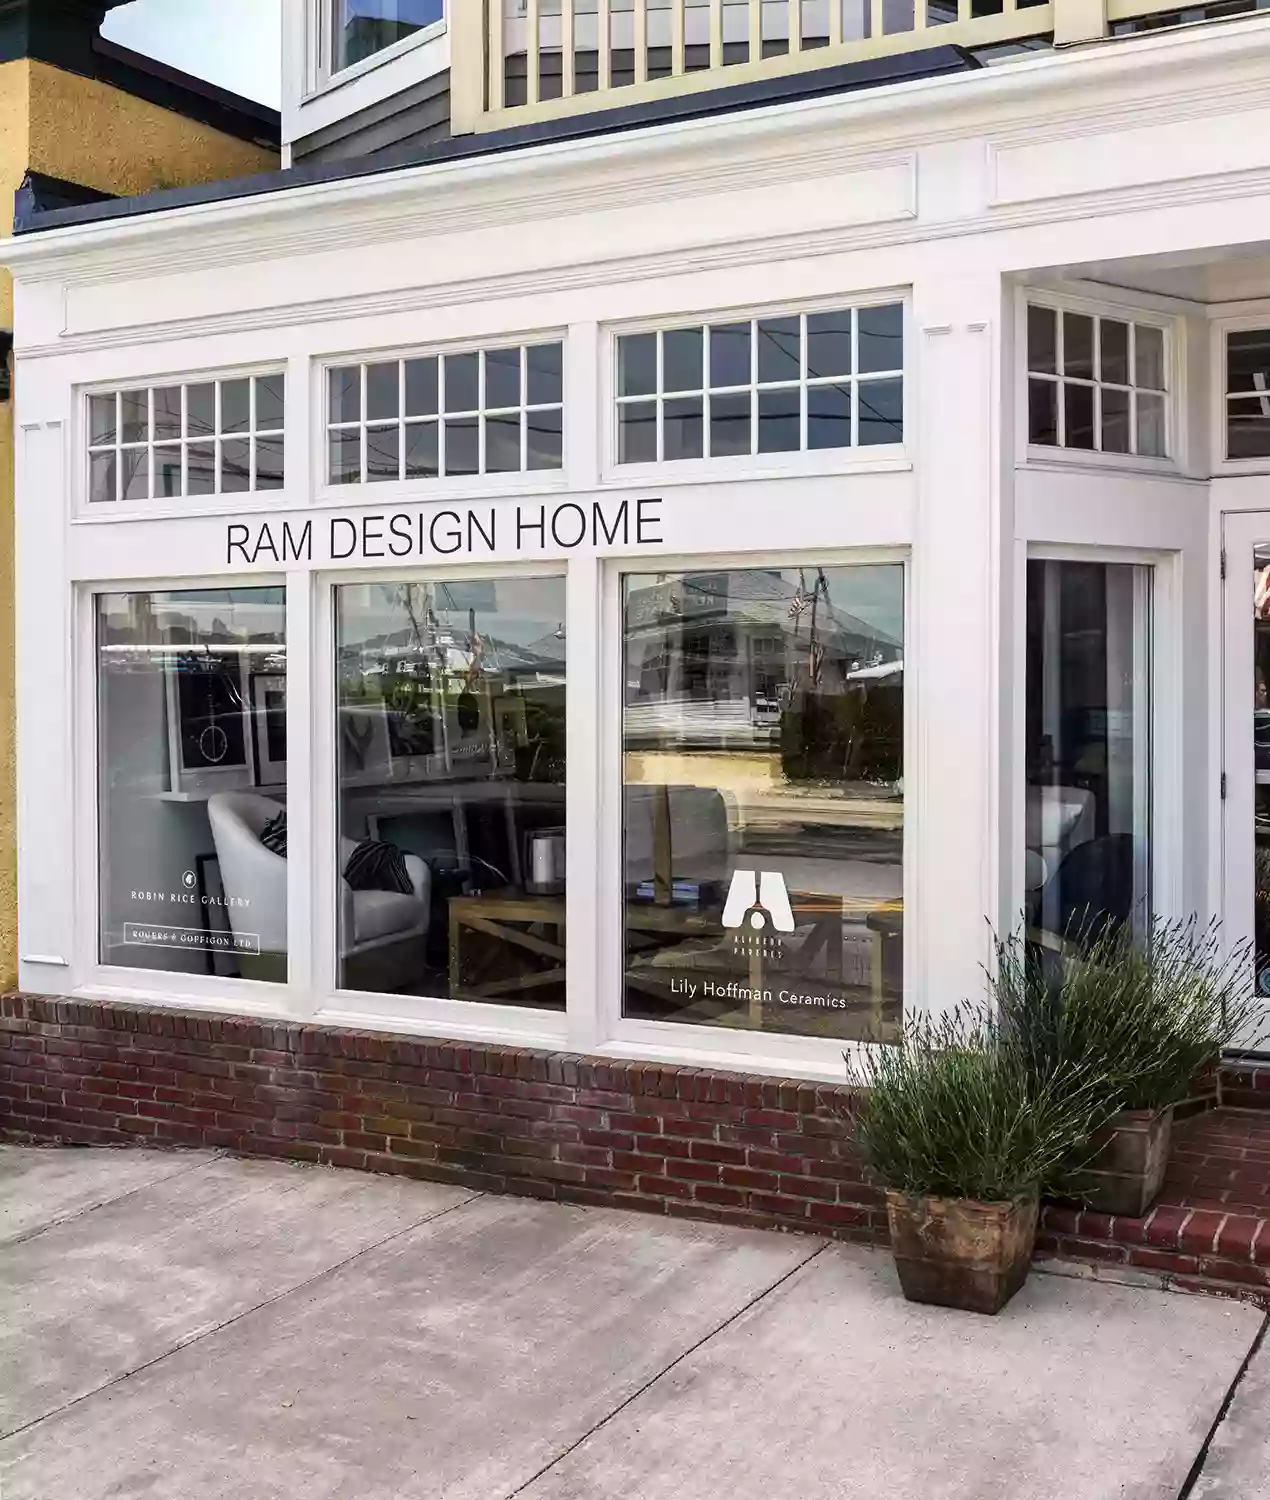 RAM Design Home